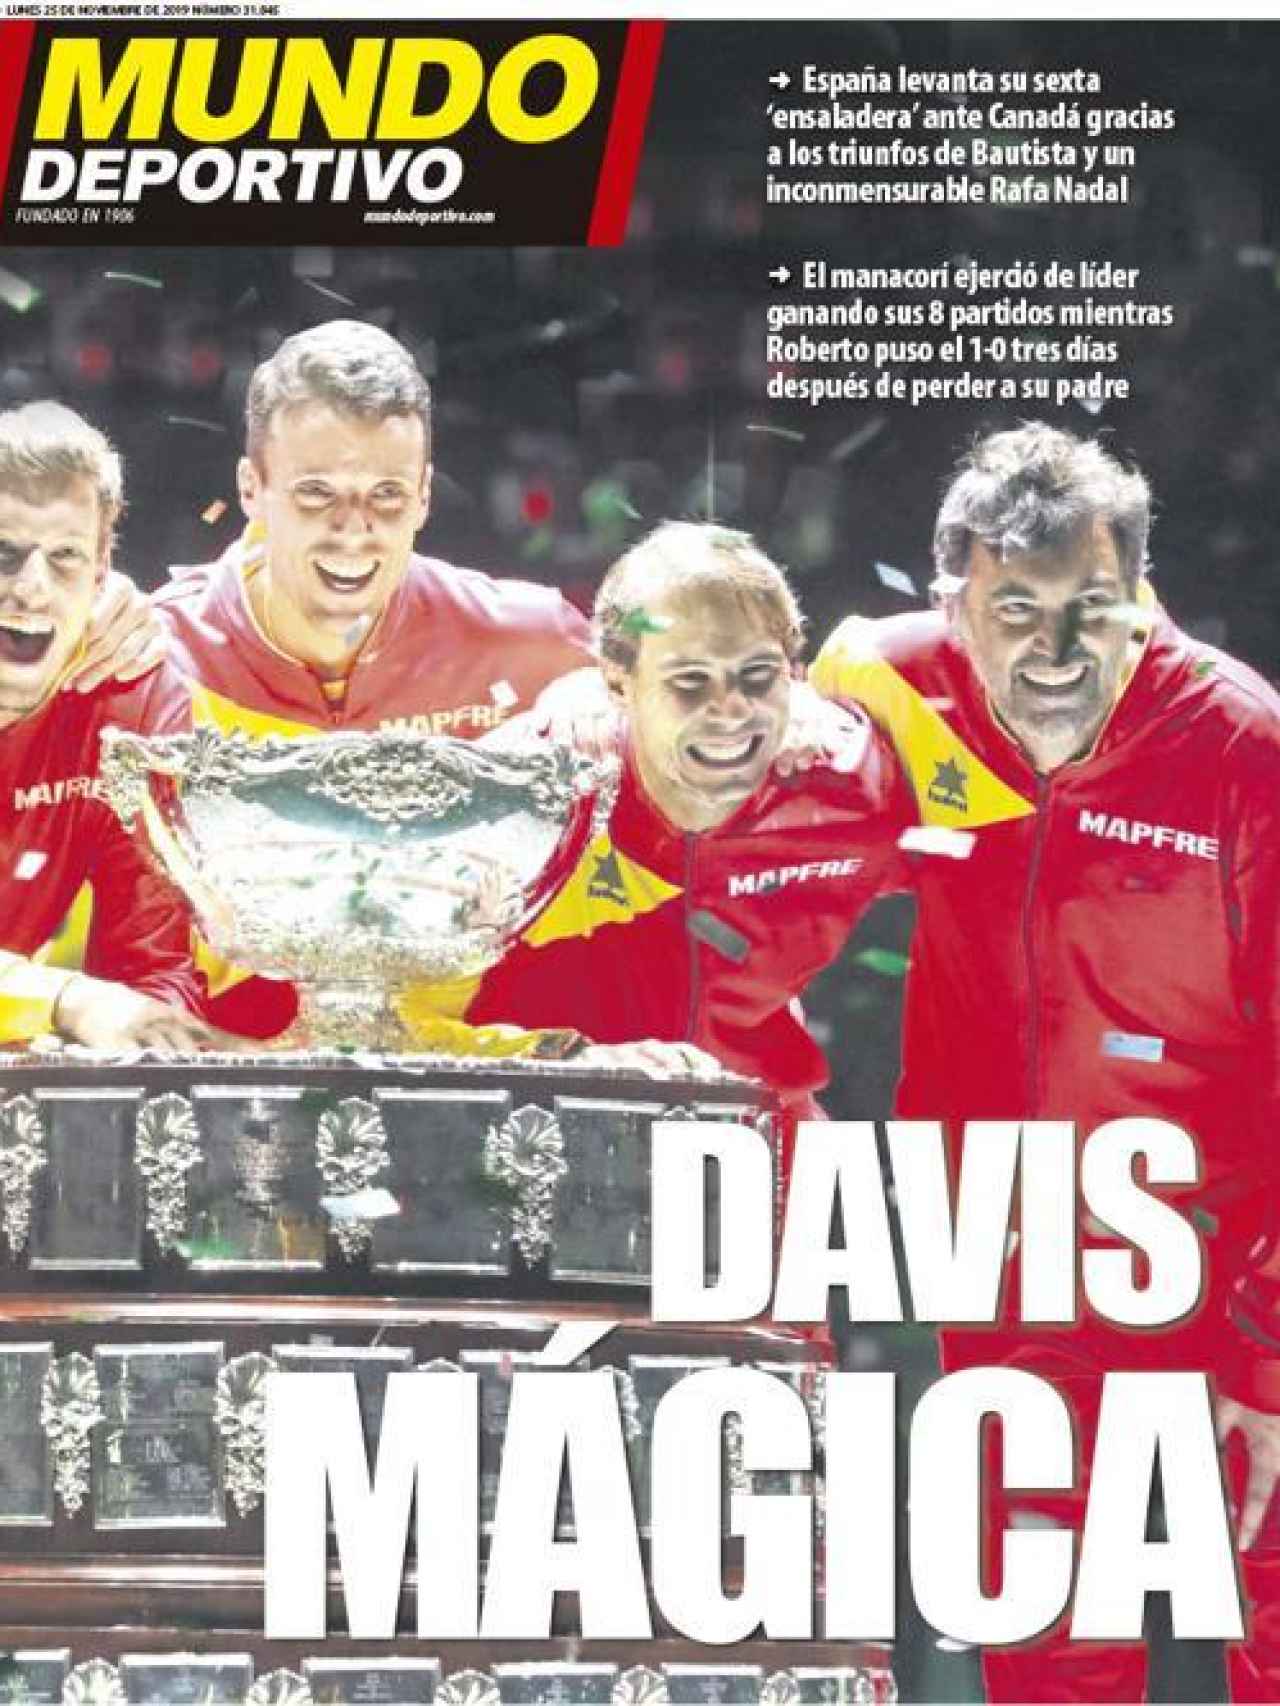 La portada del diario Mundo Deportivo (25/11/2019)